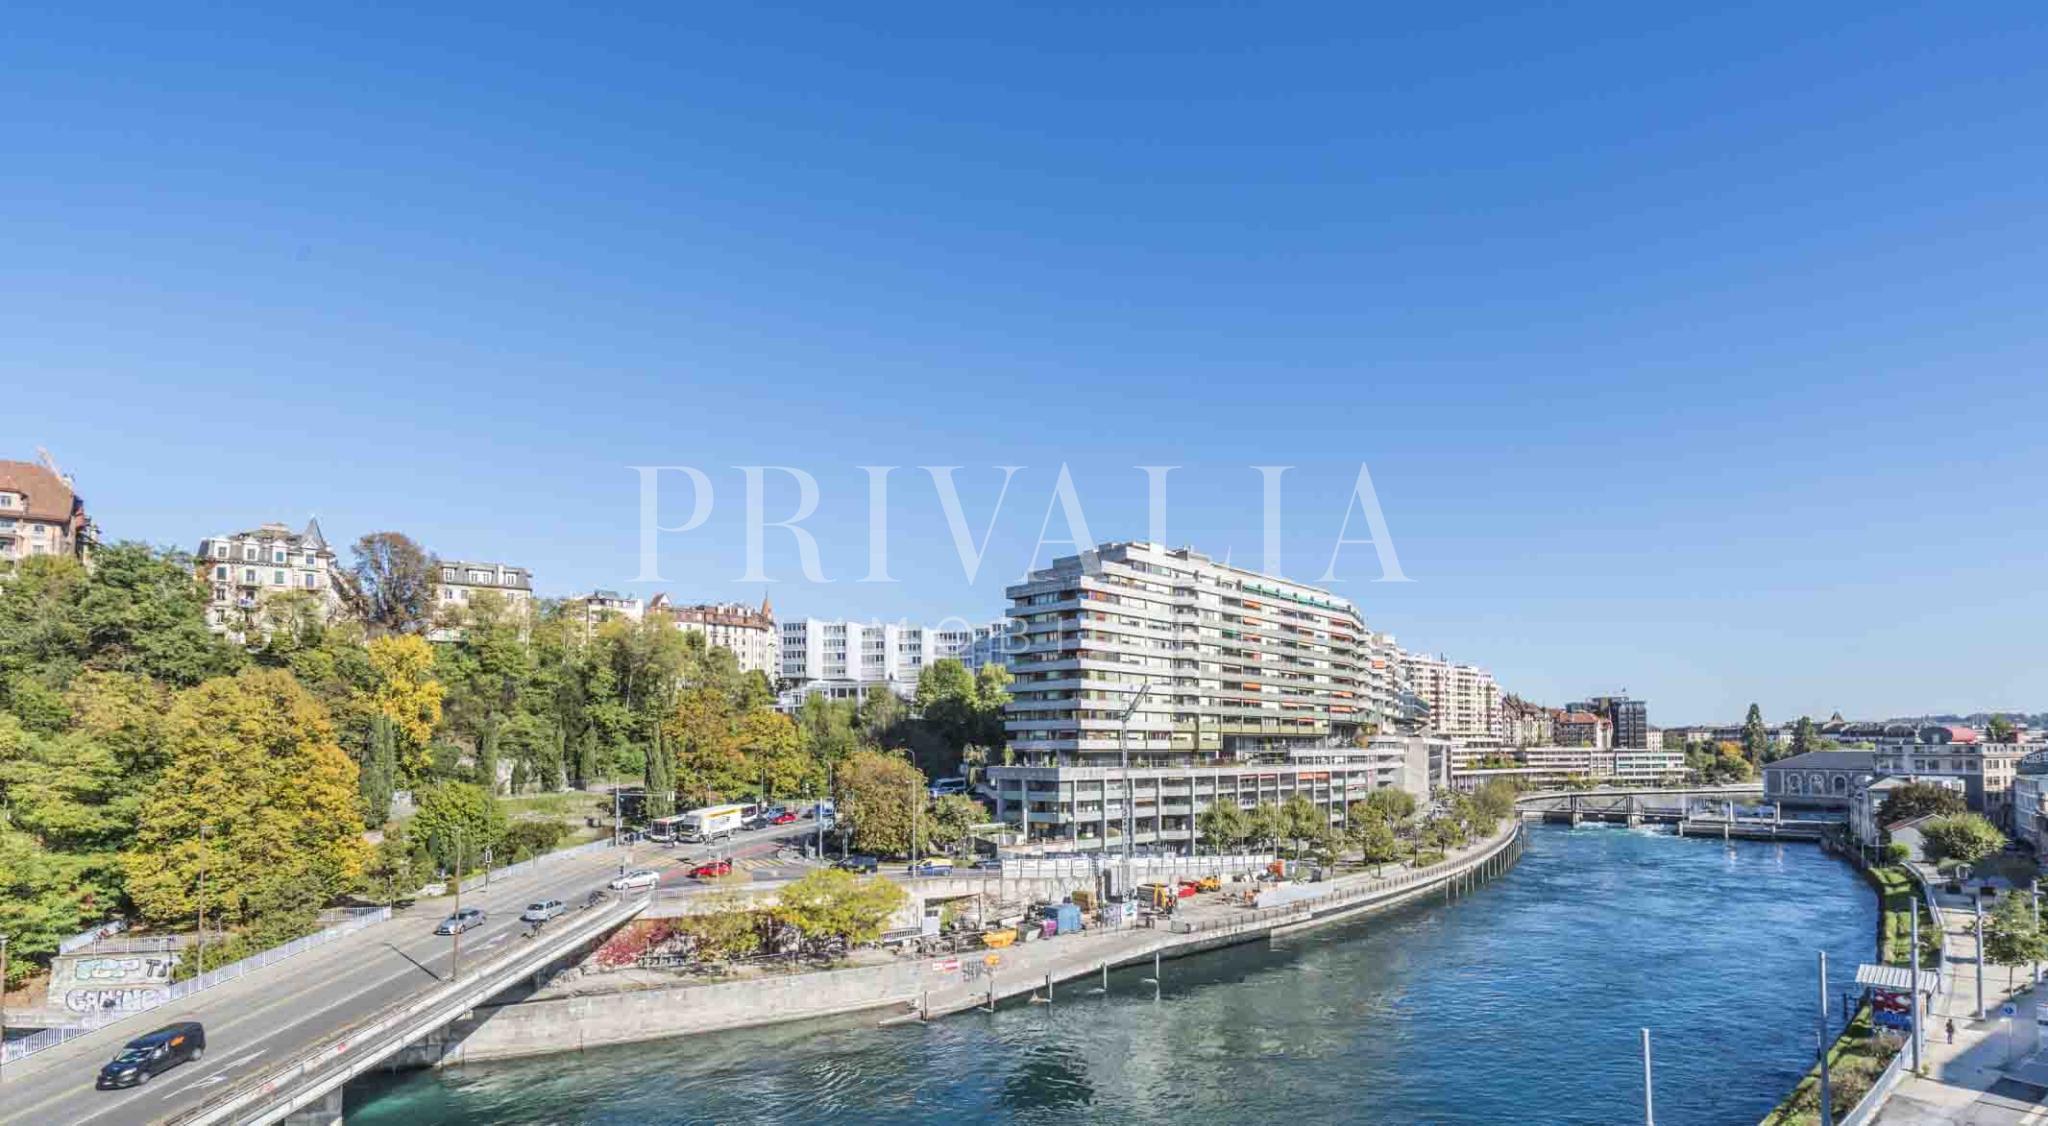 PrivaliaBel appartement meublé avec superbe vue sur le Rhône et la ville